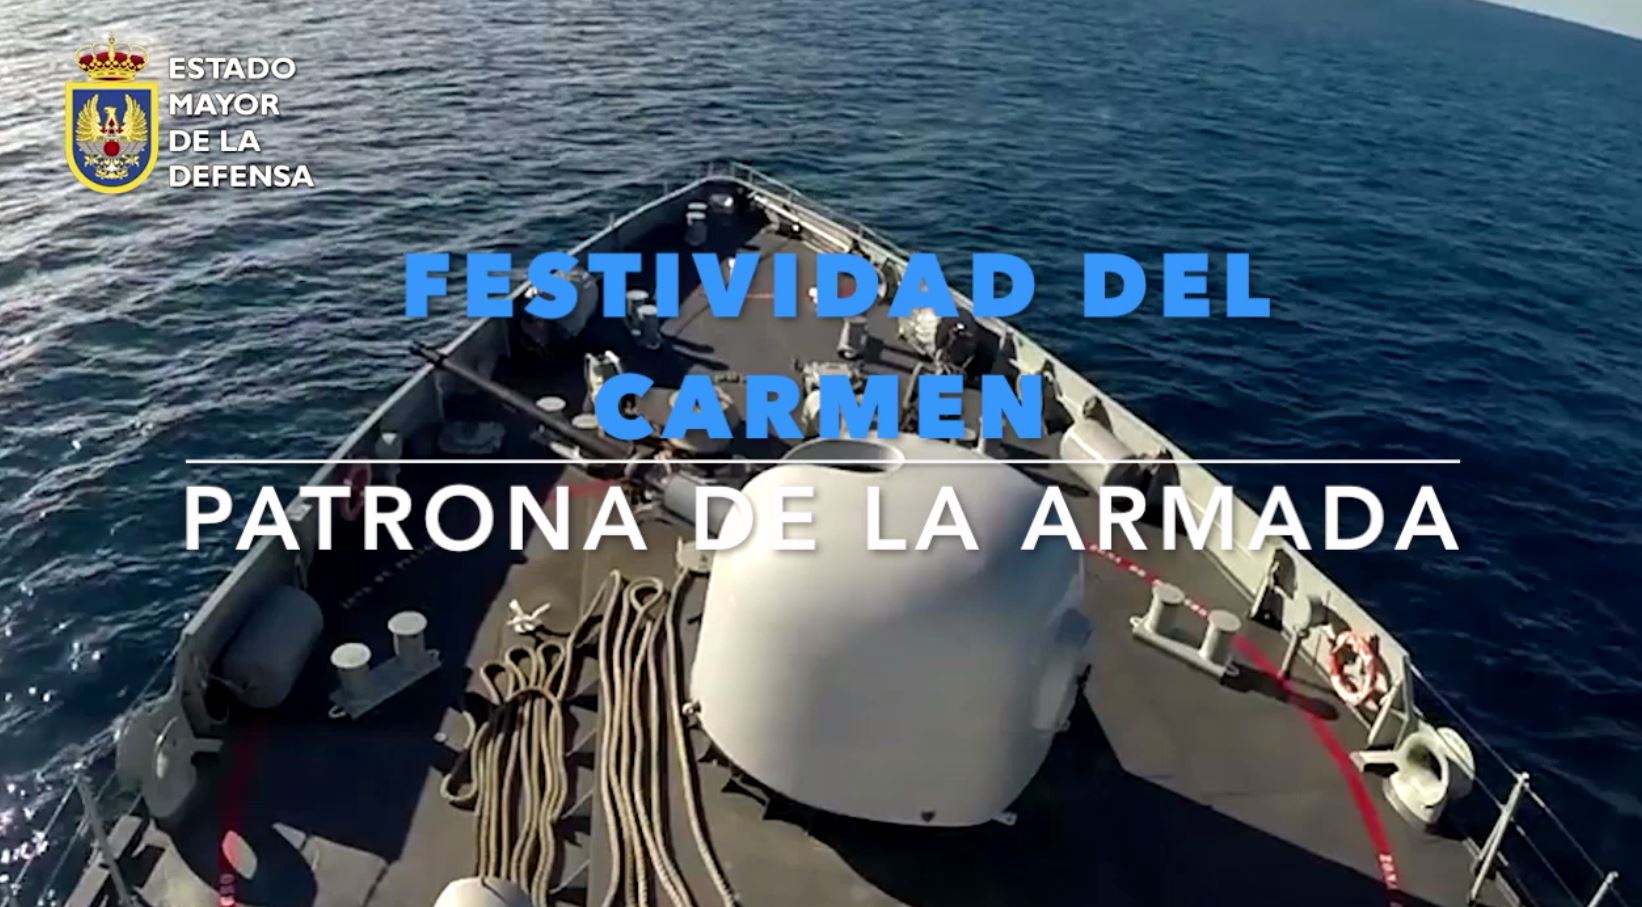 Festividad de la Virgen del Carmen, patrona de la Armada y las gentes de mar.